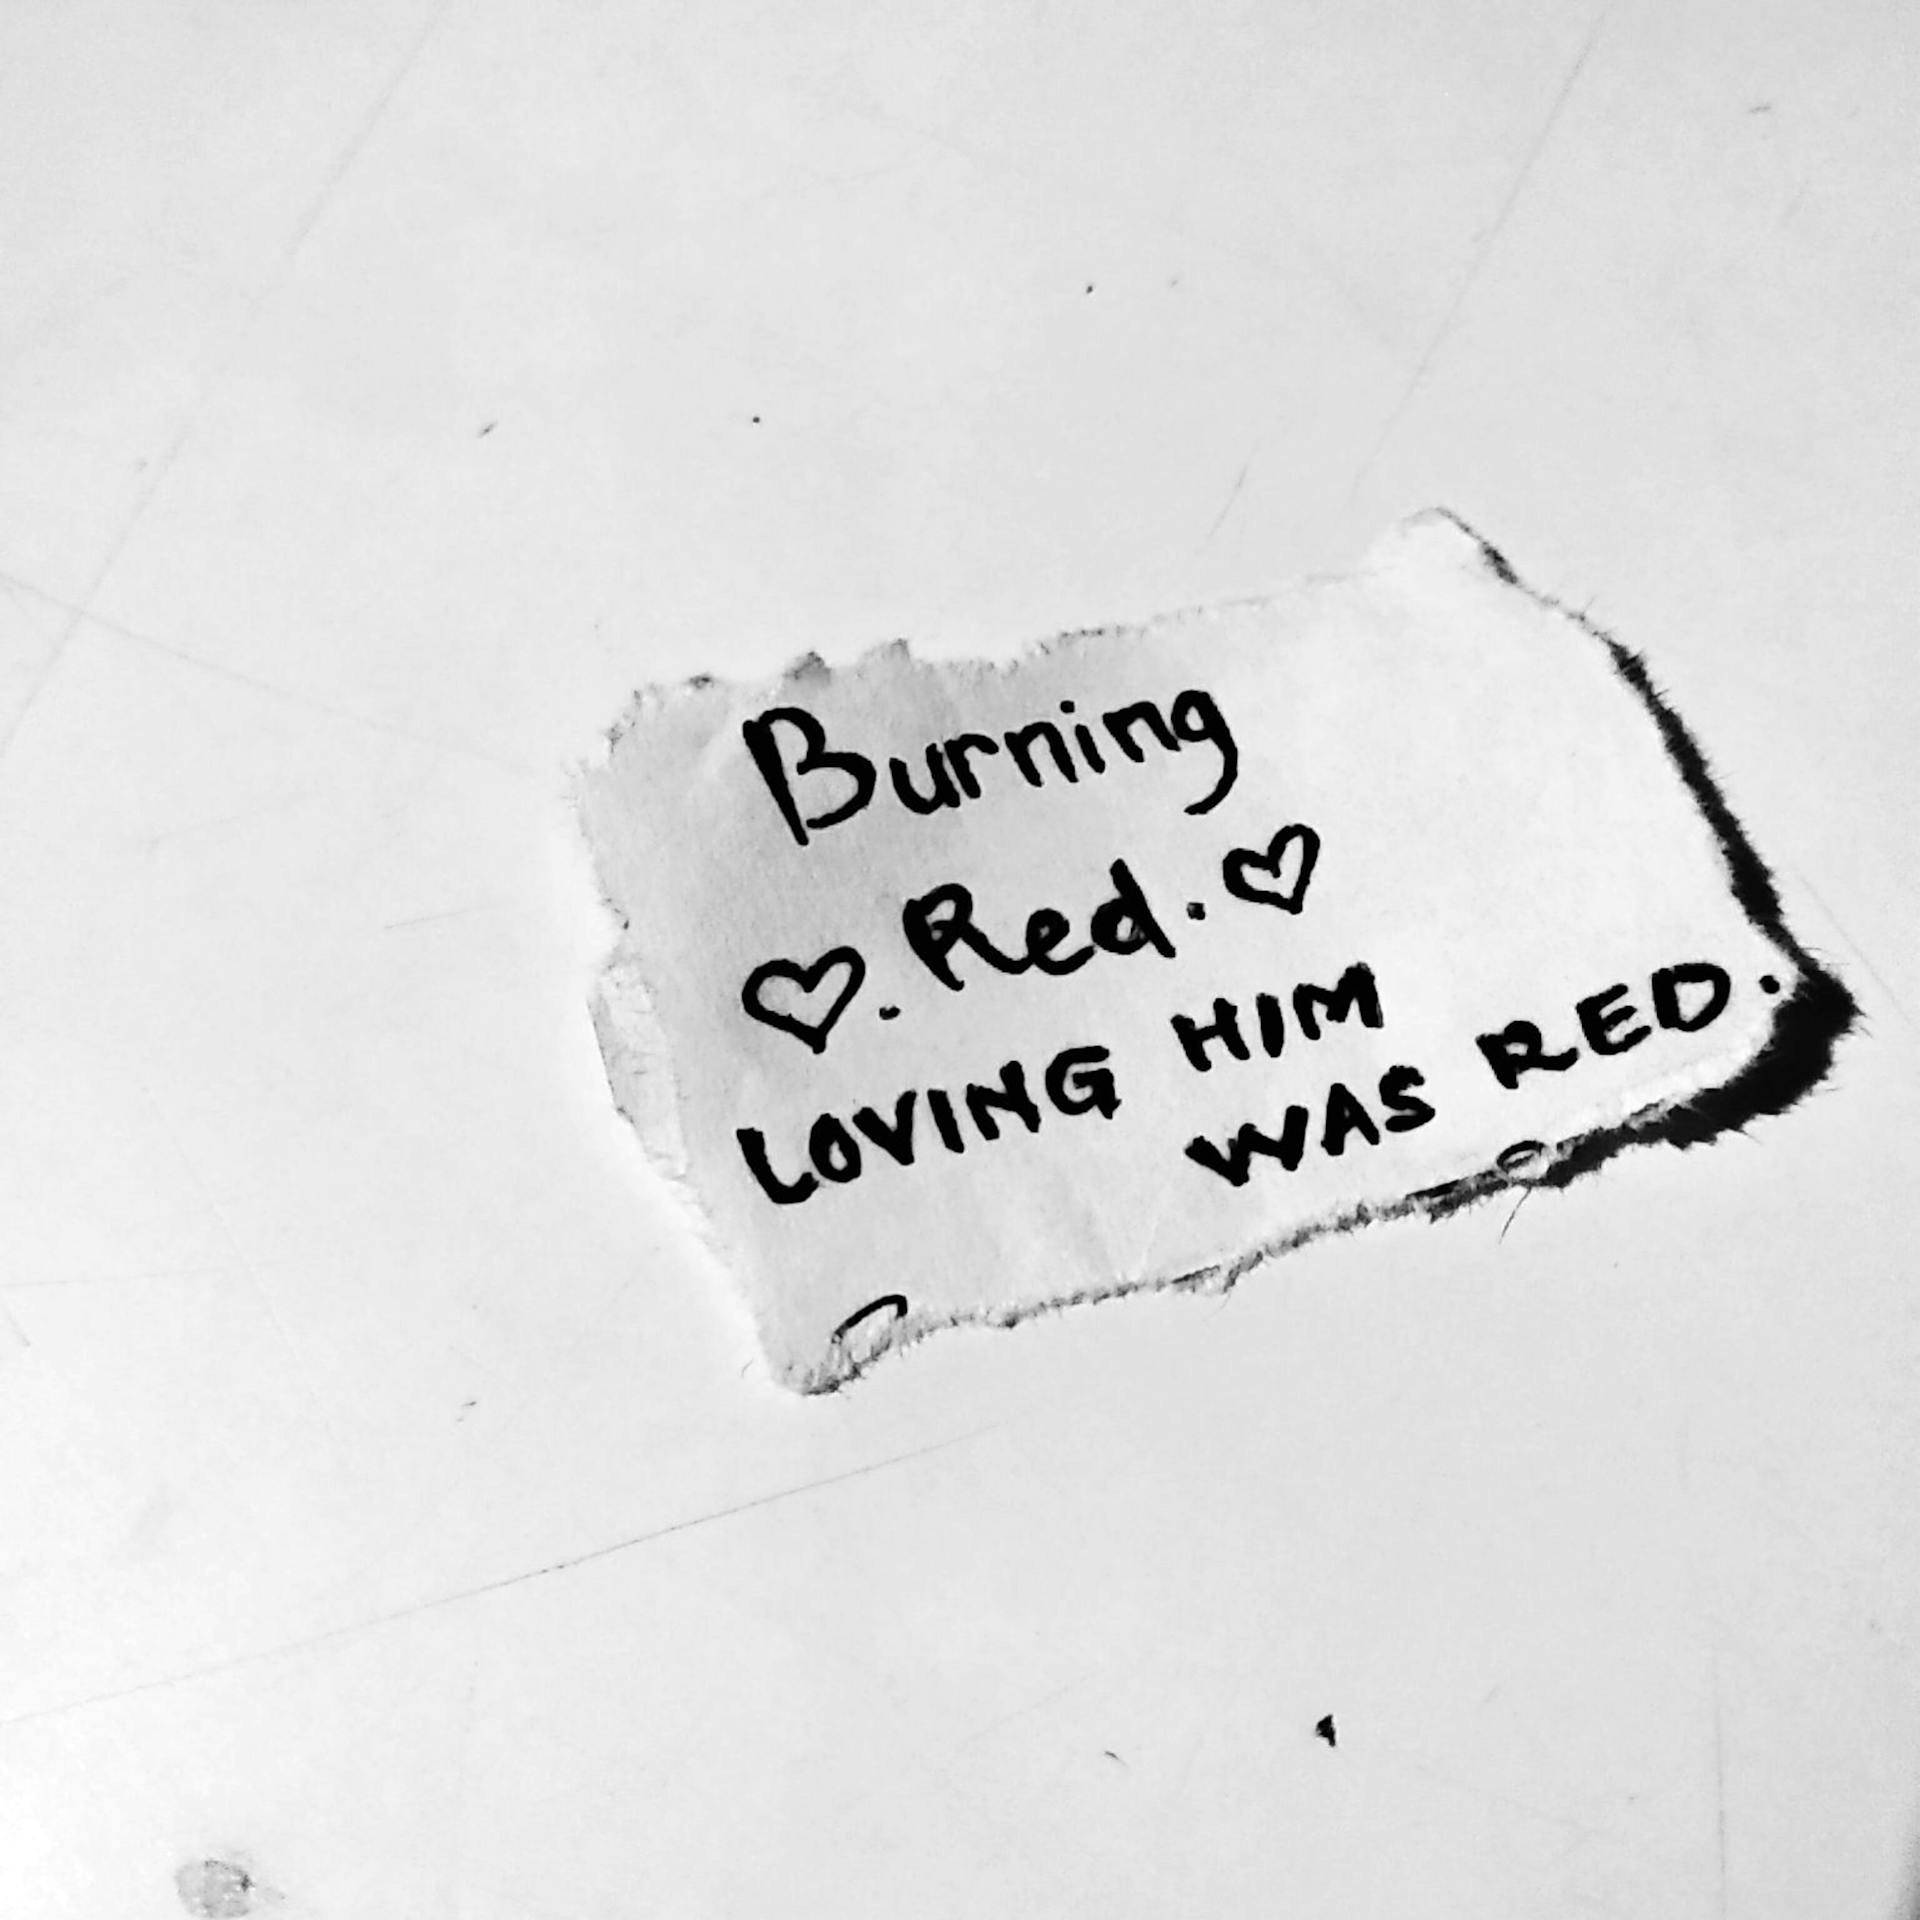 Un message écrit à la main sur un morceau de papier | Source : Pexels